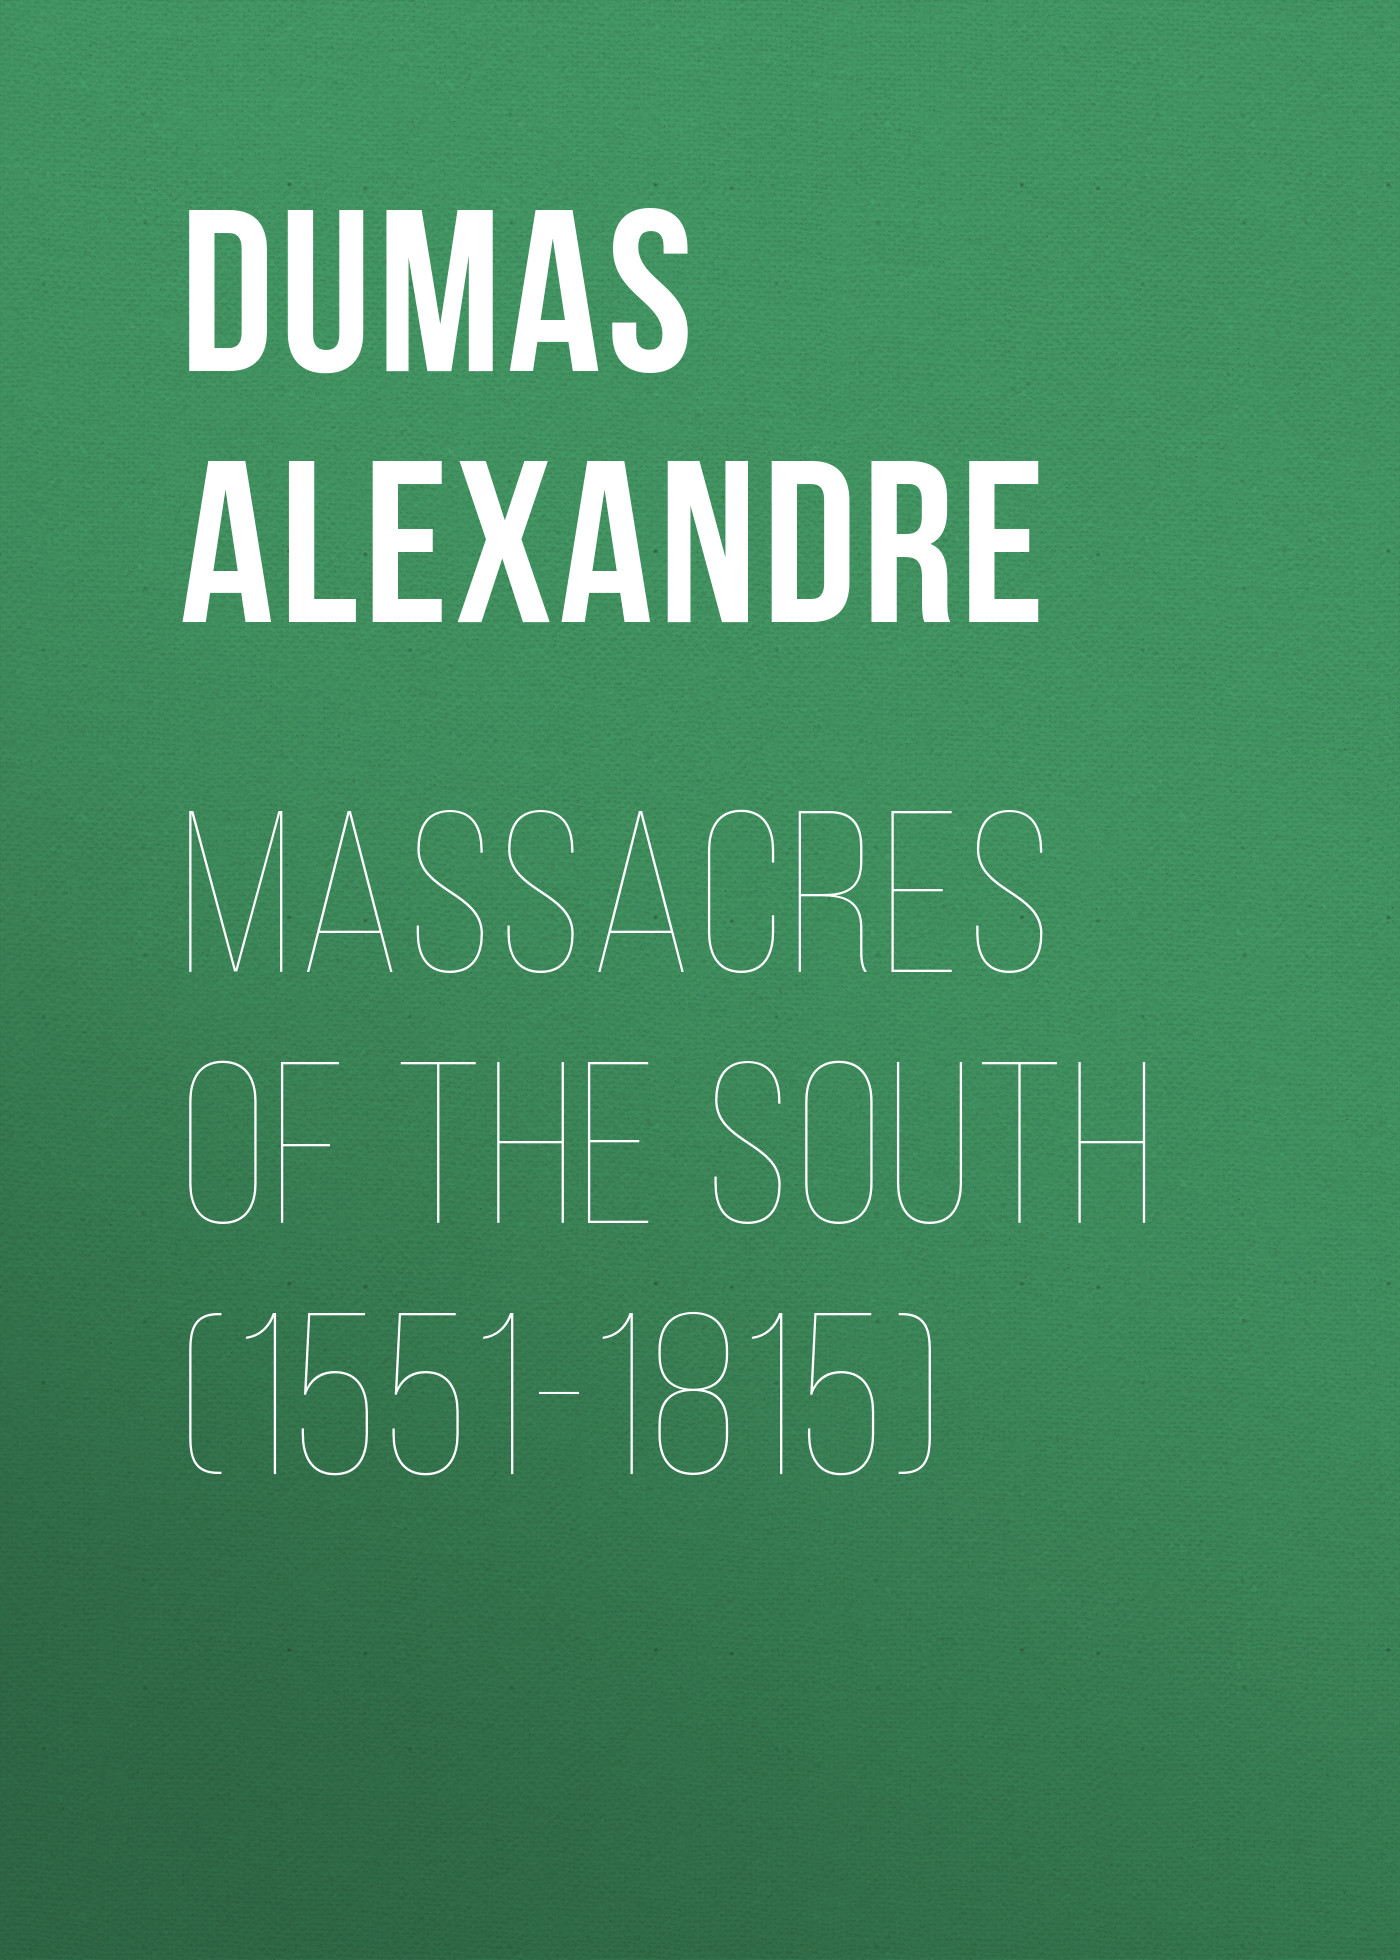 Книга Massacres of the South (1551-1815) из серии , созданная Alexandre Dumas, может относится к жанру Литература 19 века, Зарубежная старинная литература, Зарубежная классика. Стоимость электронной книги Massacres of the South (1551-1815) с идентификатором 25201535 составляет 0 руб.